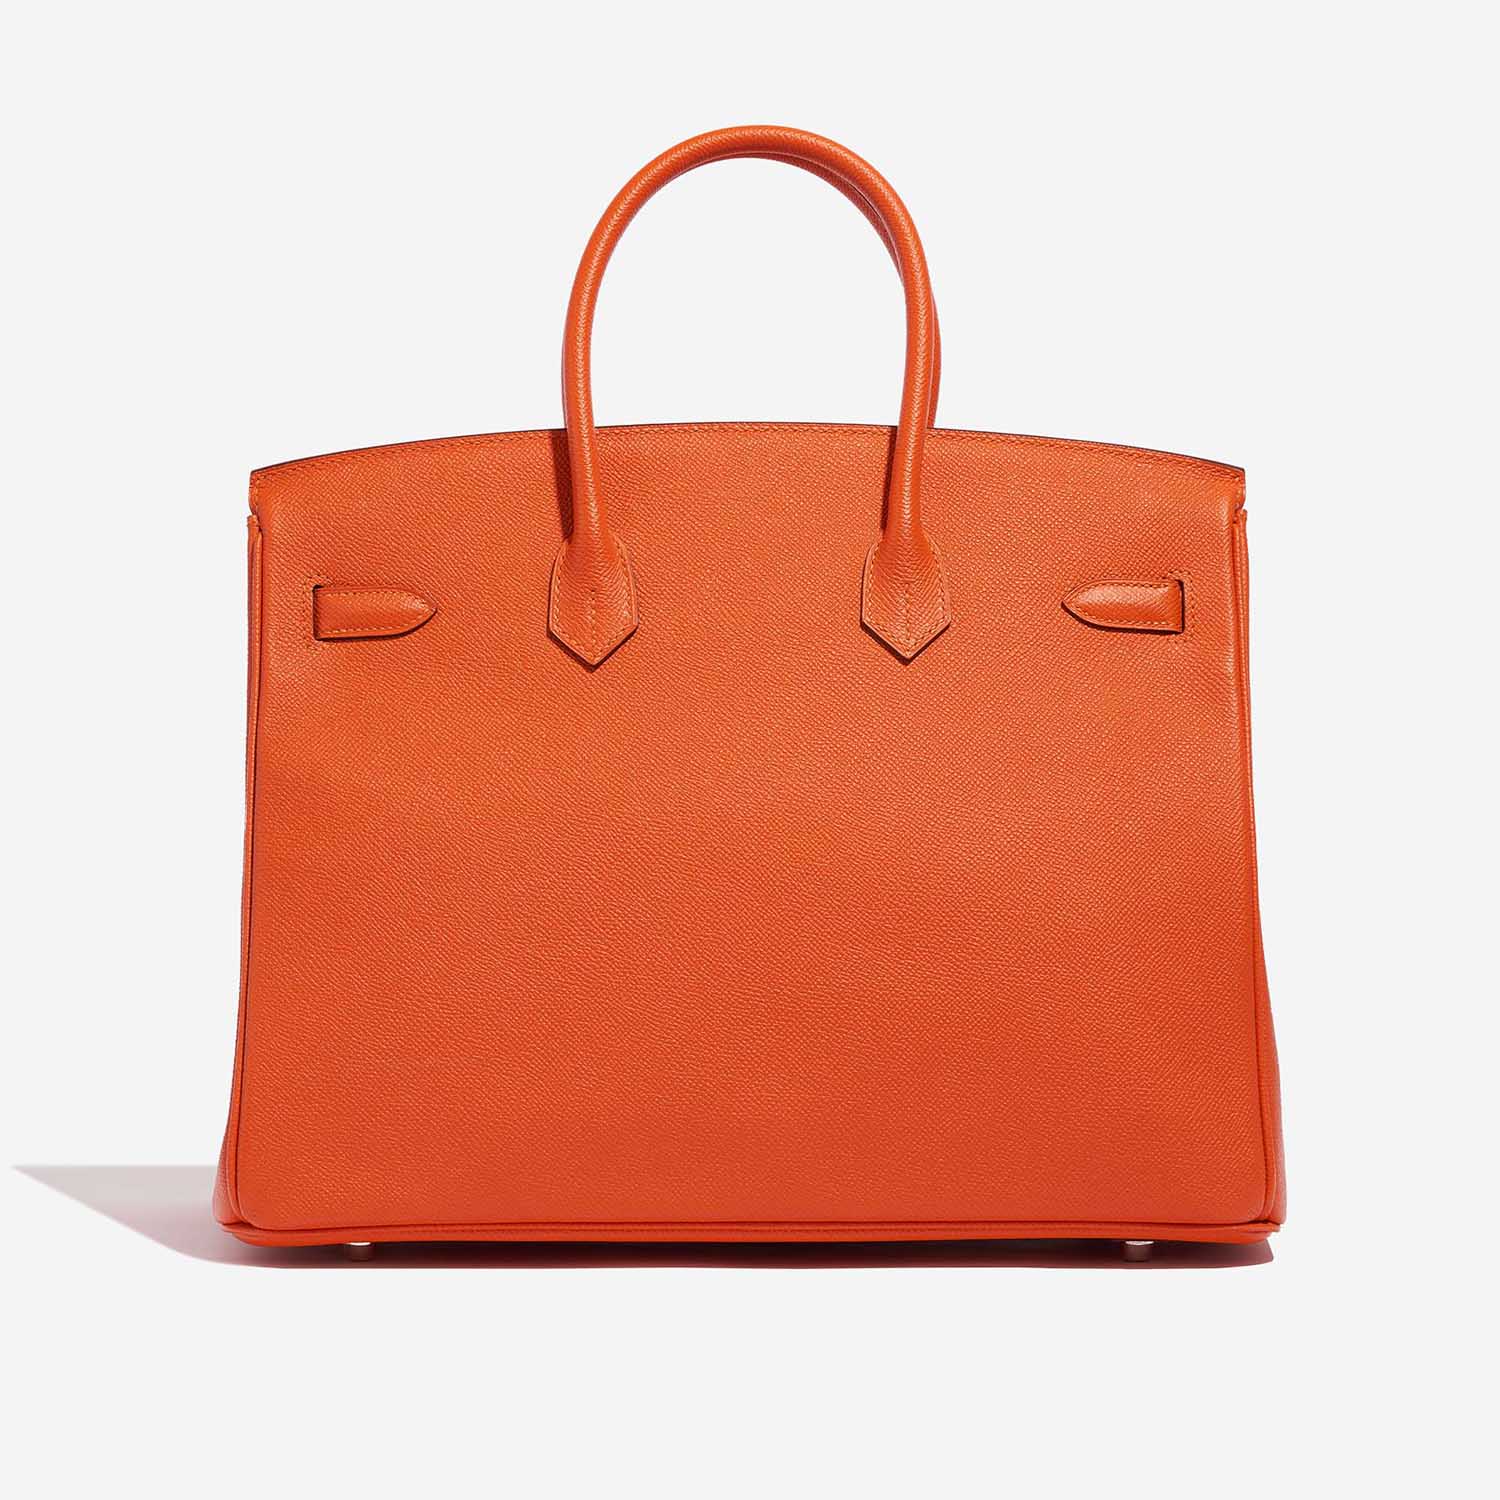 Hermès Birkin 35 Feu Back | Verkaufen Sie Ihre Designertasche auf Saclab.com